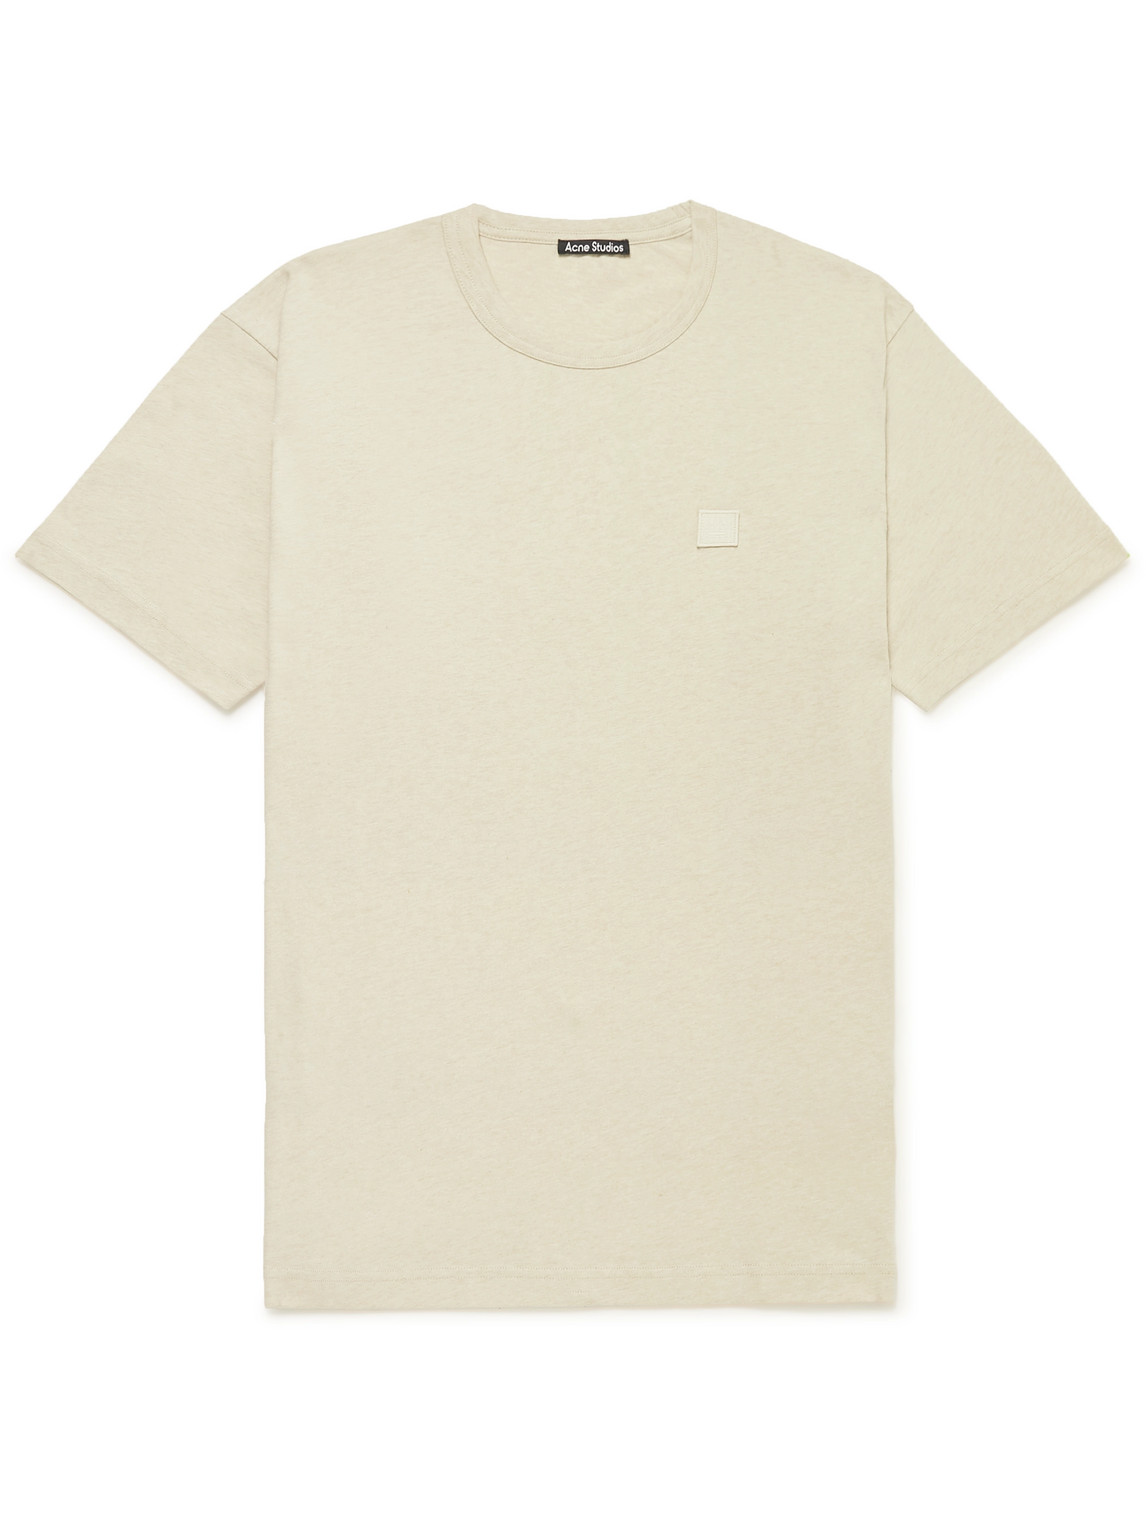 Acne Studios Nash Logo-Appliquéd Cotton-Jersey T-Shirt